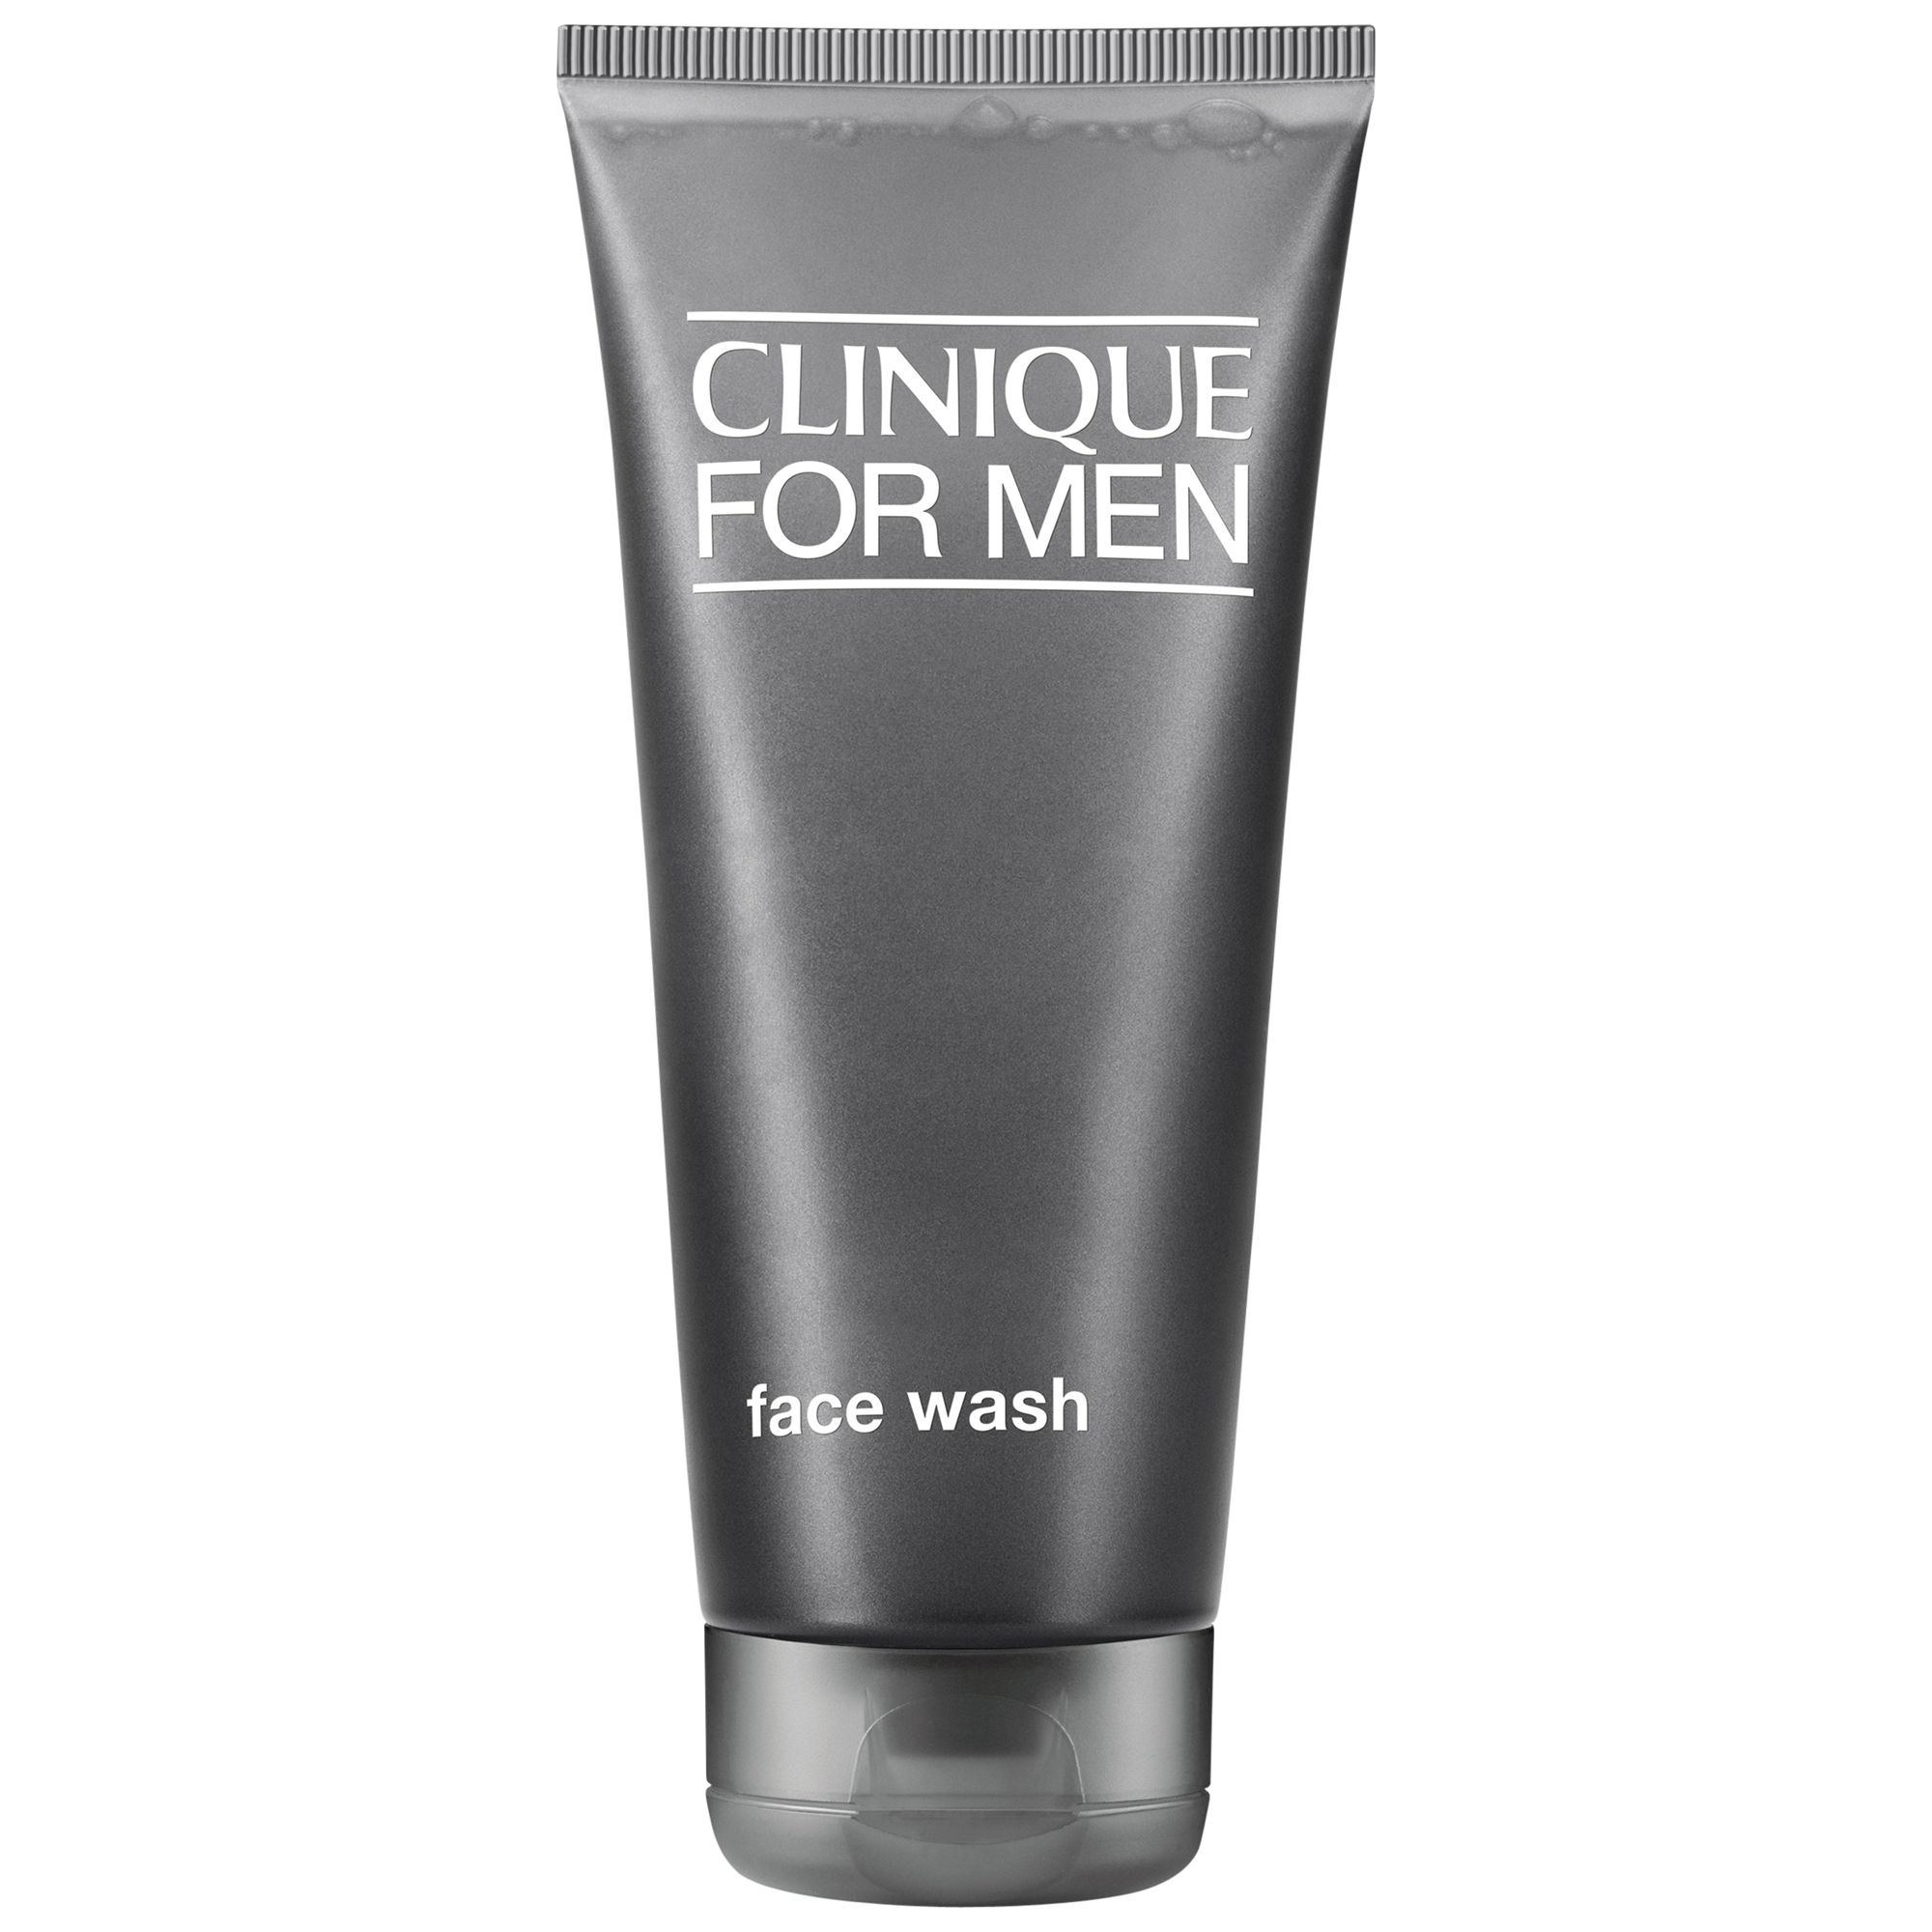 CLINIQUE FOR MEN fash wash scrub